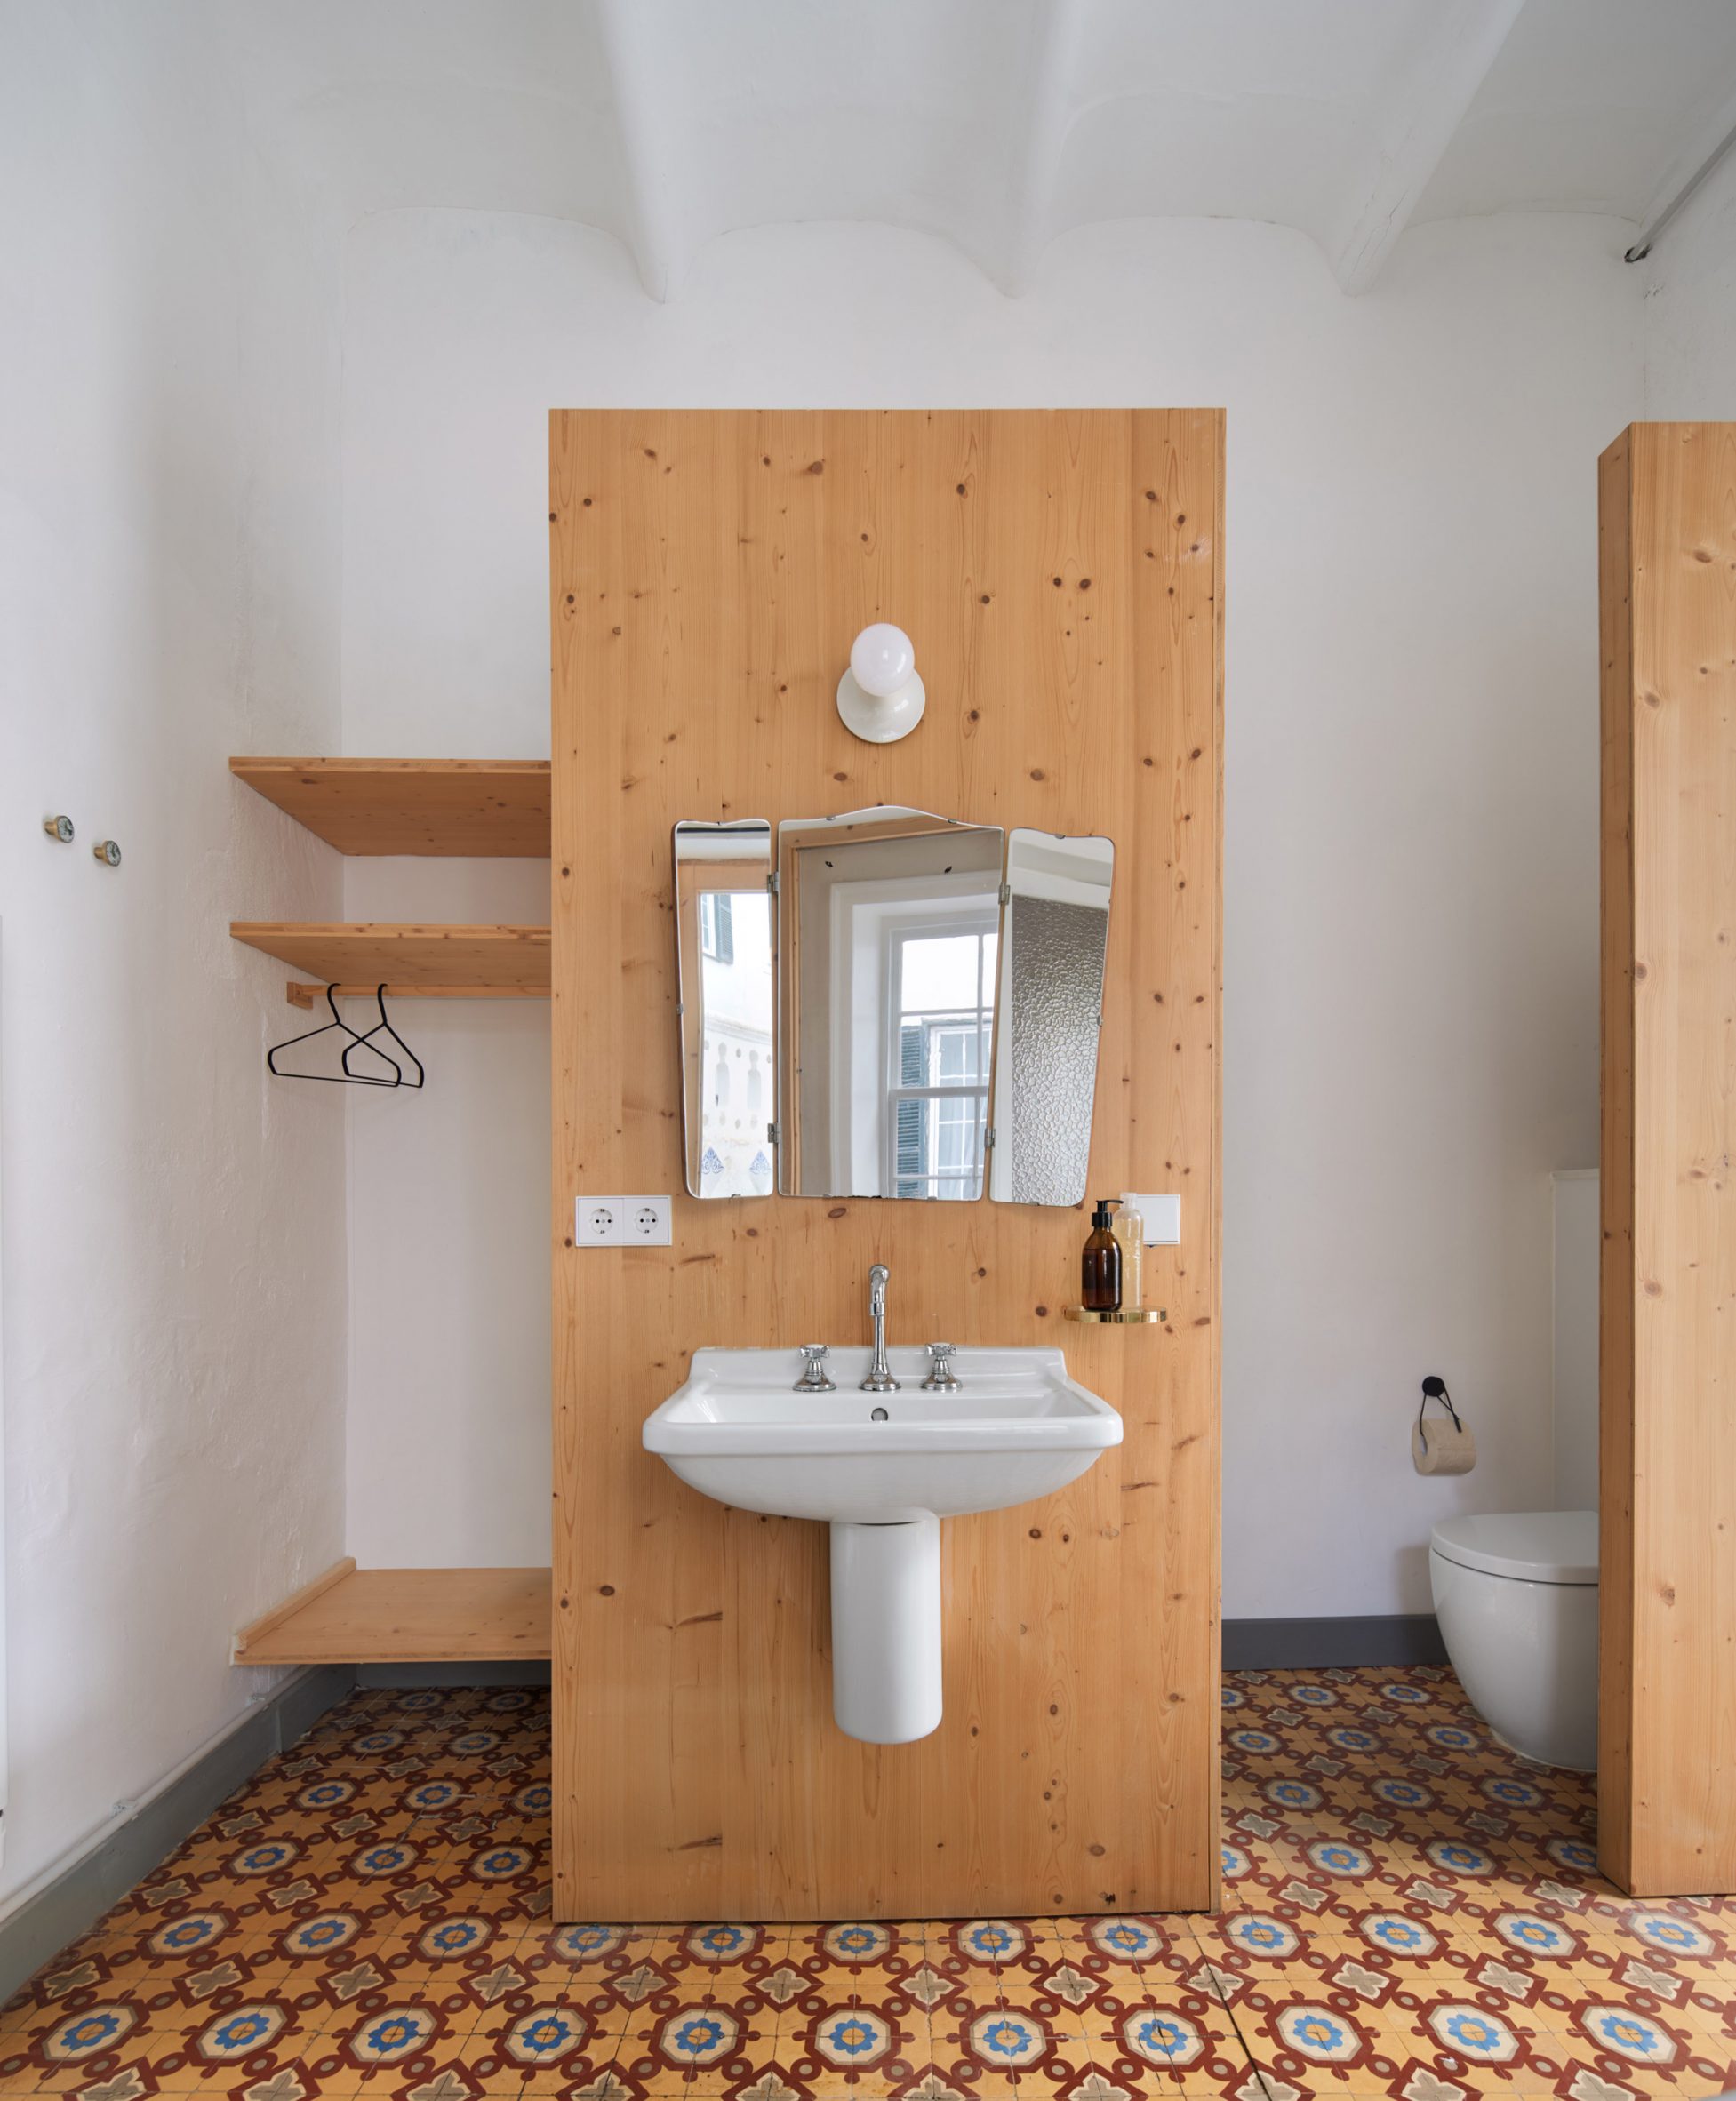 Bathroom of hotel in Menorca by Emma Martí Arquitectura